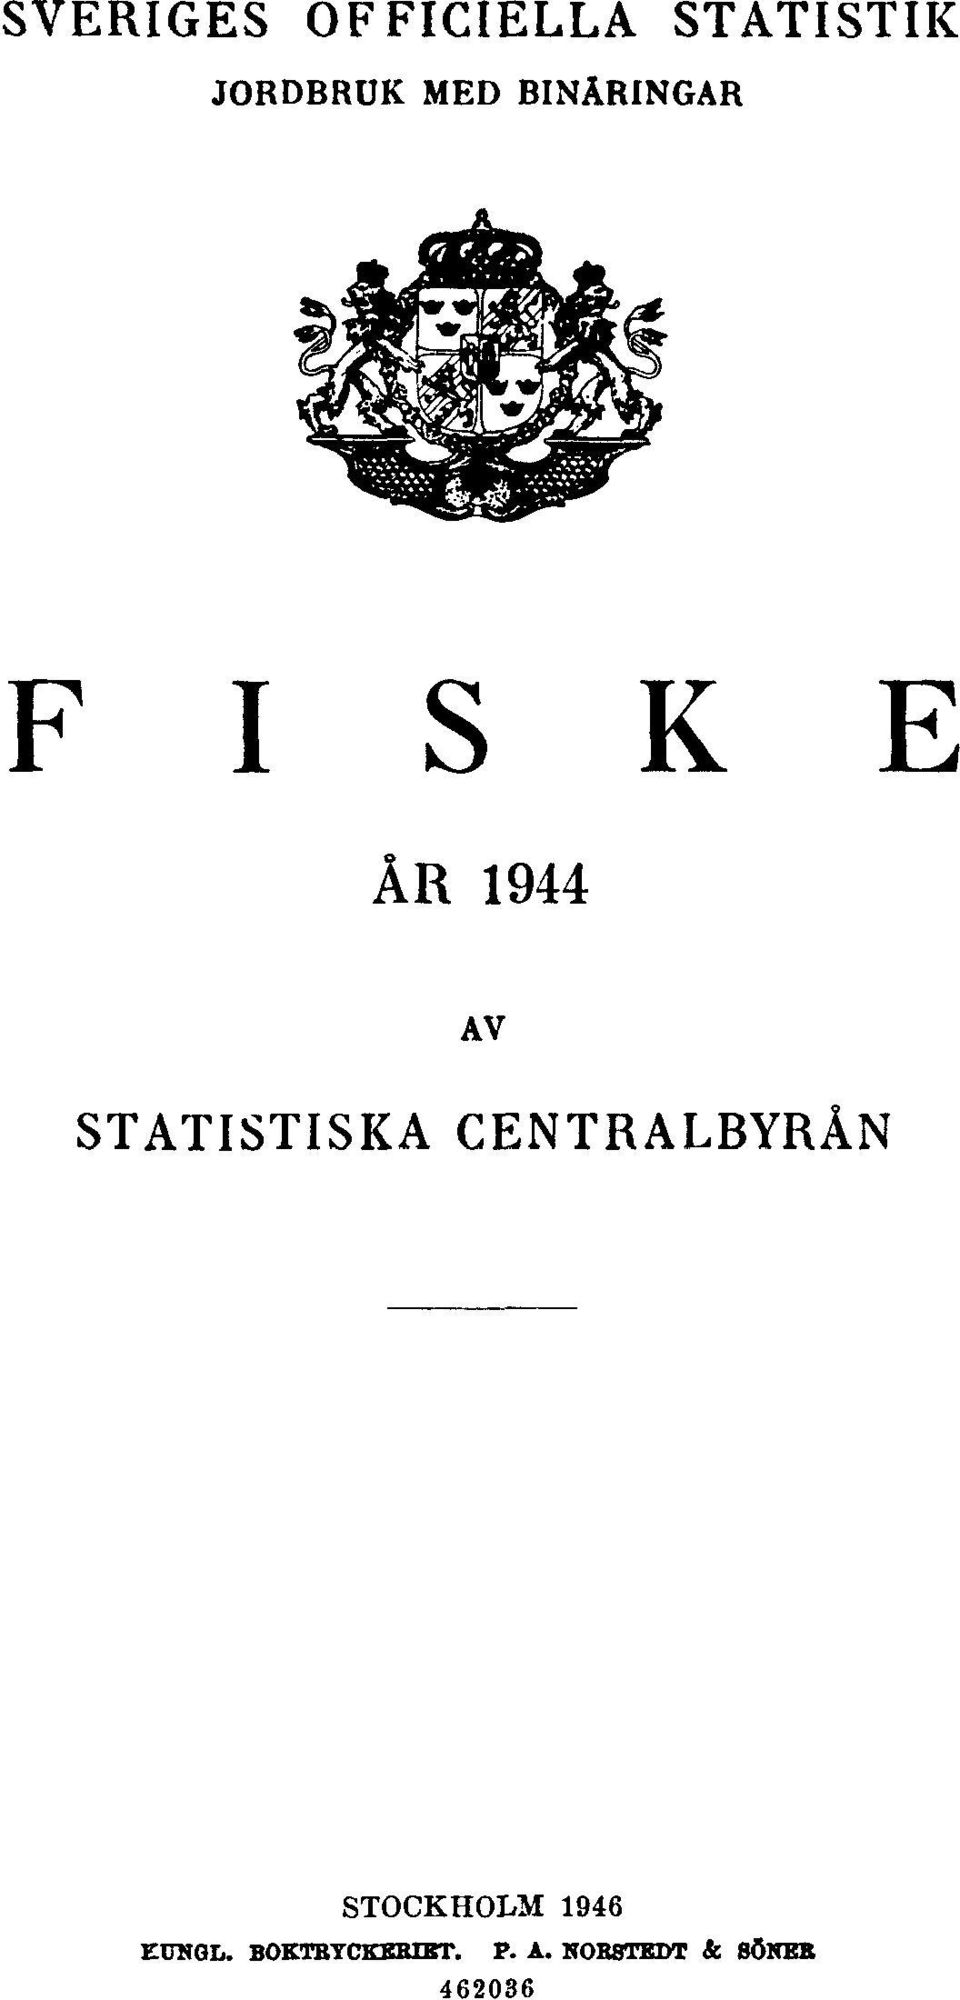 STATISTISKA CENTRALBYRÅN STOCKHOLM 1946